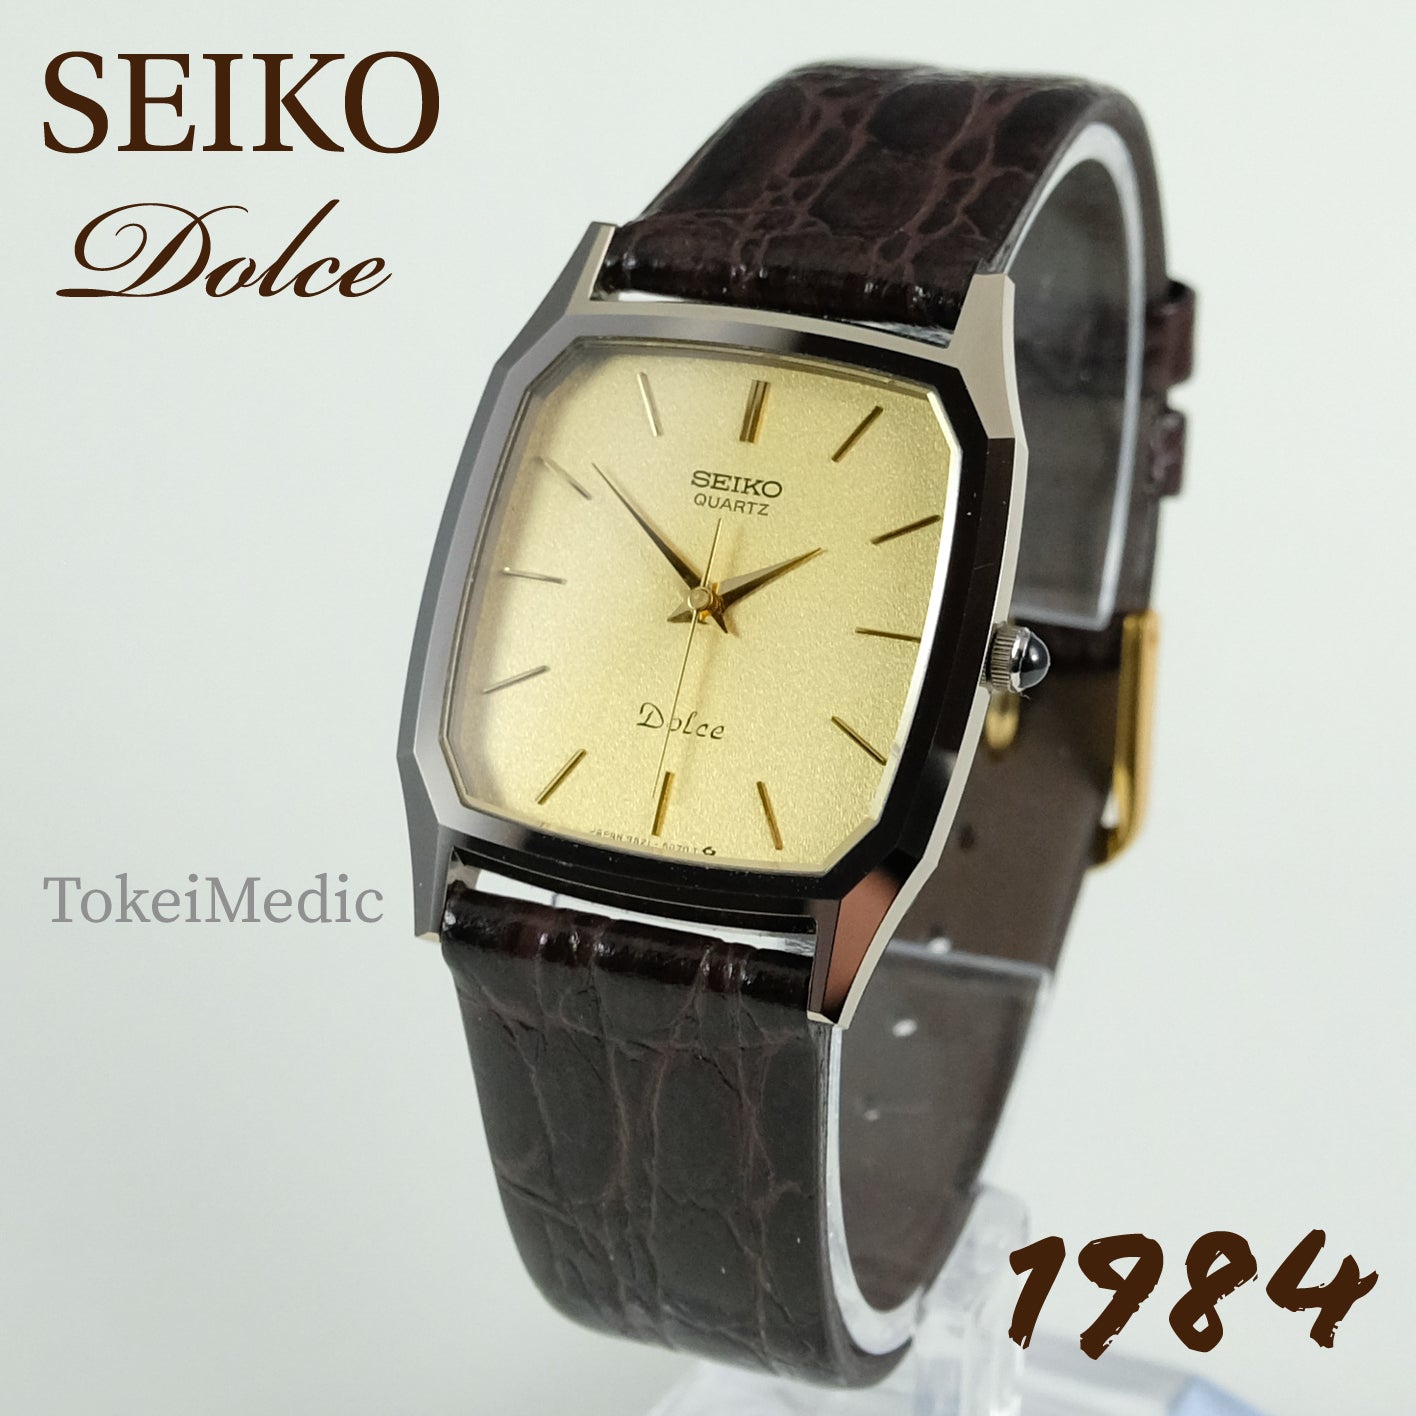 1984 Seiko Dolce 9521-5070 – TokeiMedic